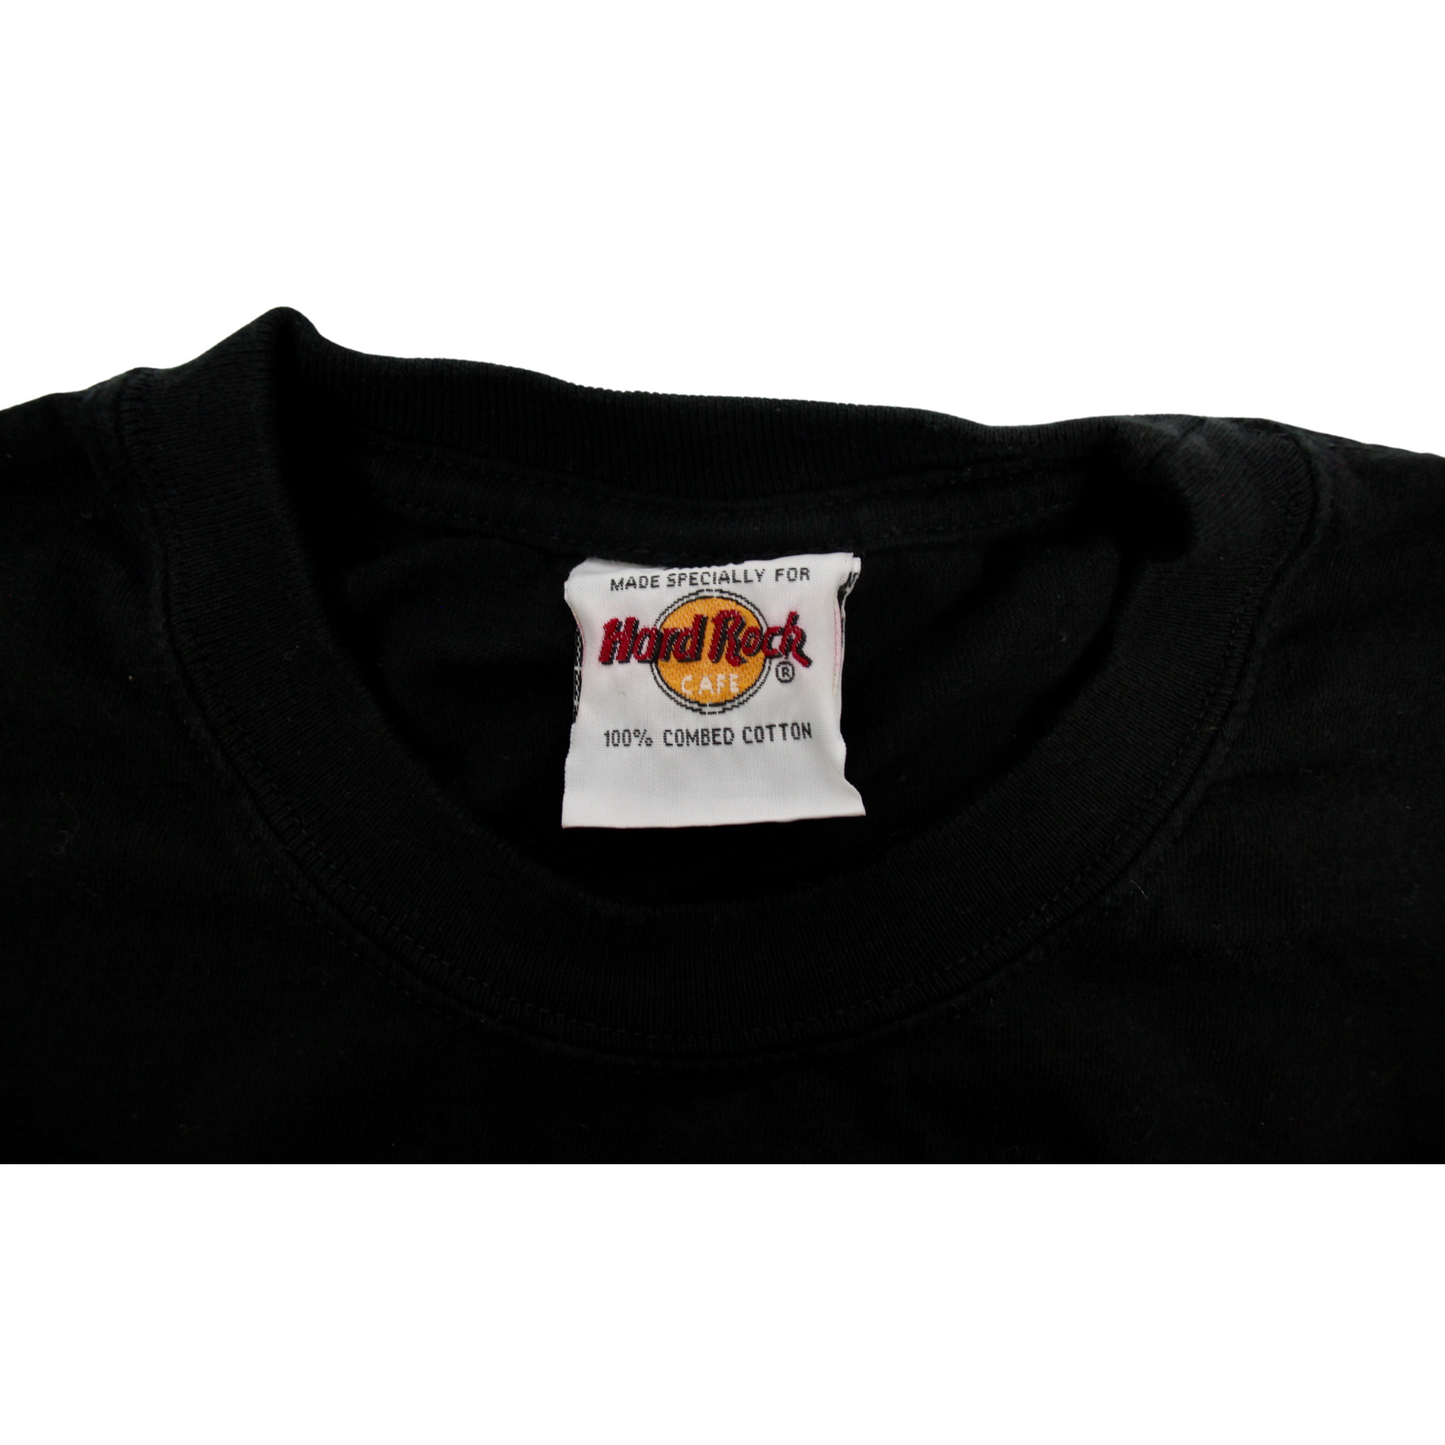 Vintage Hard Rock Cafe Bruce Springsteen Signature Series T-Shirt